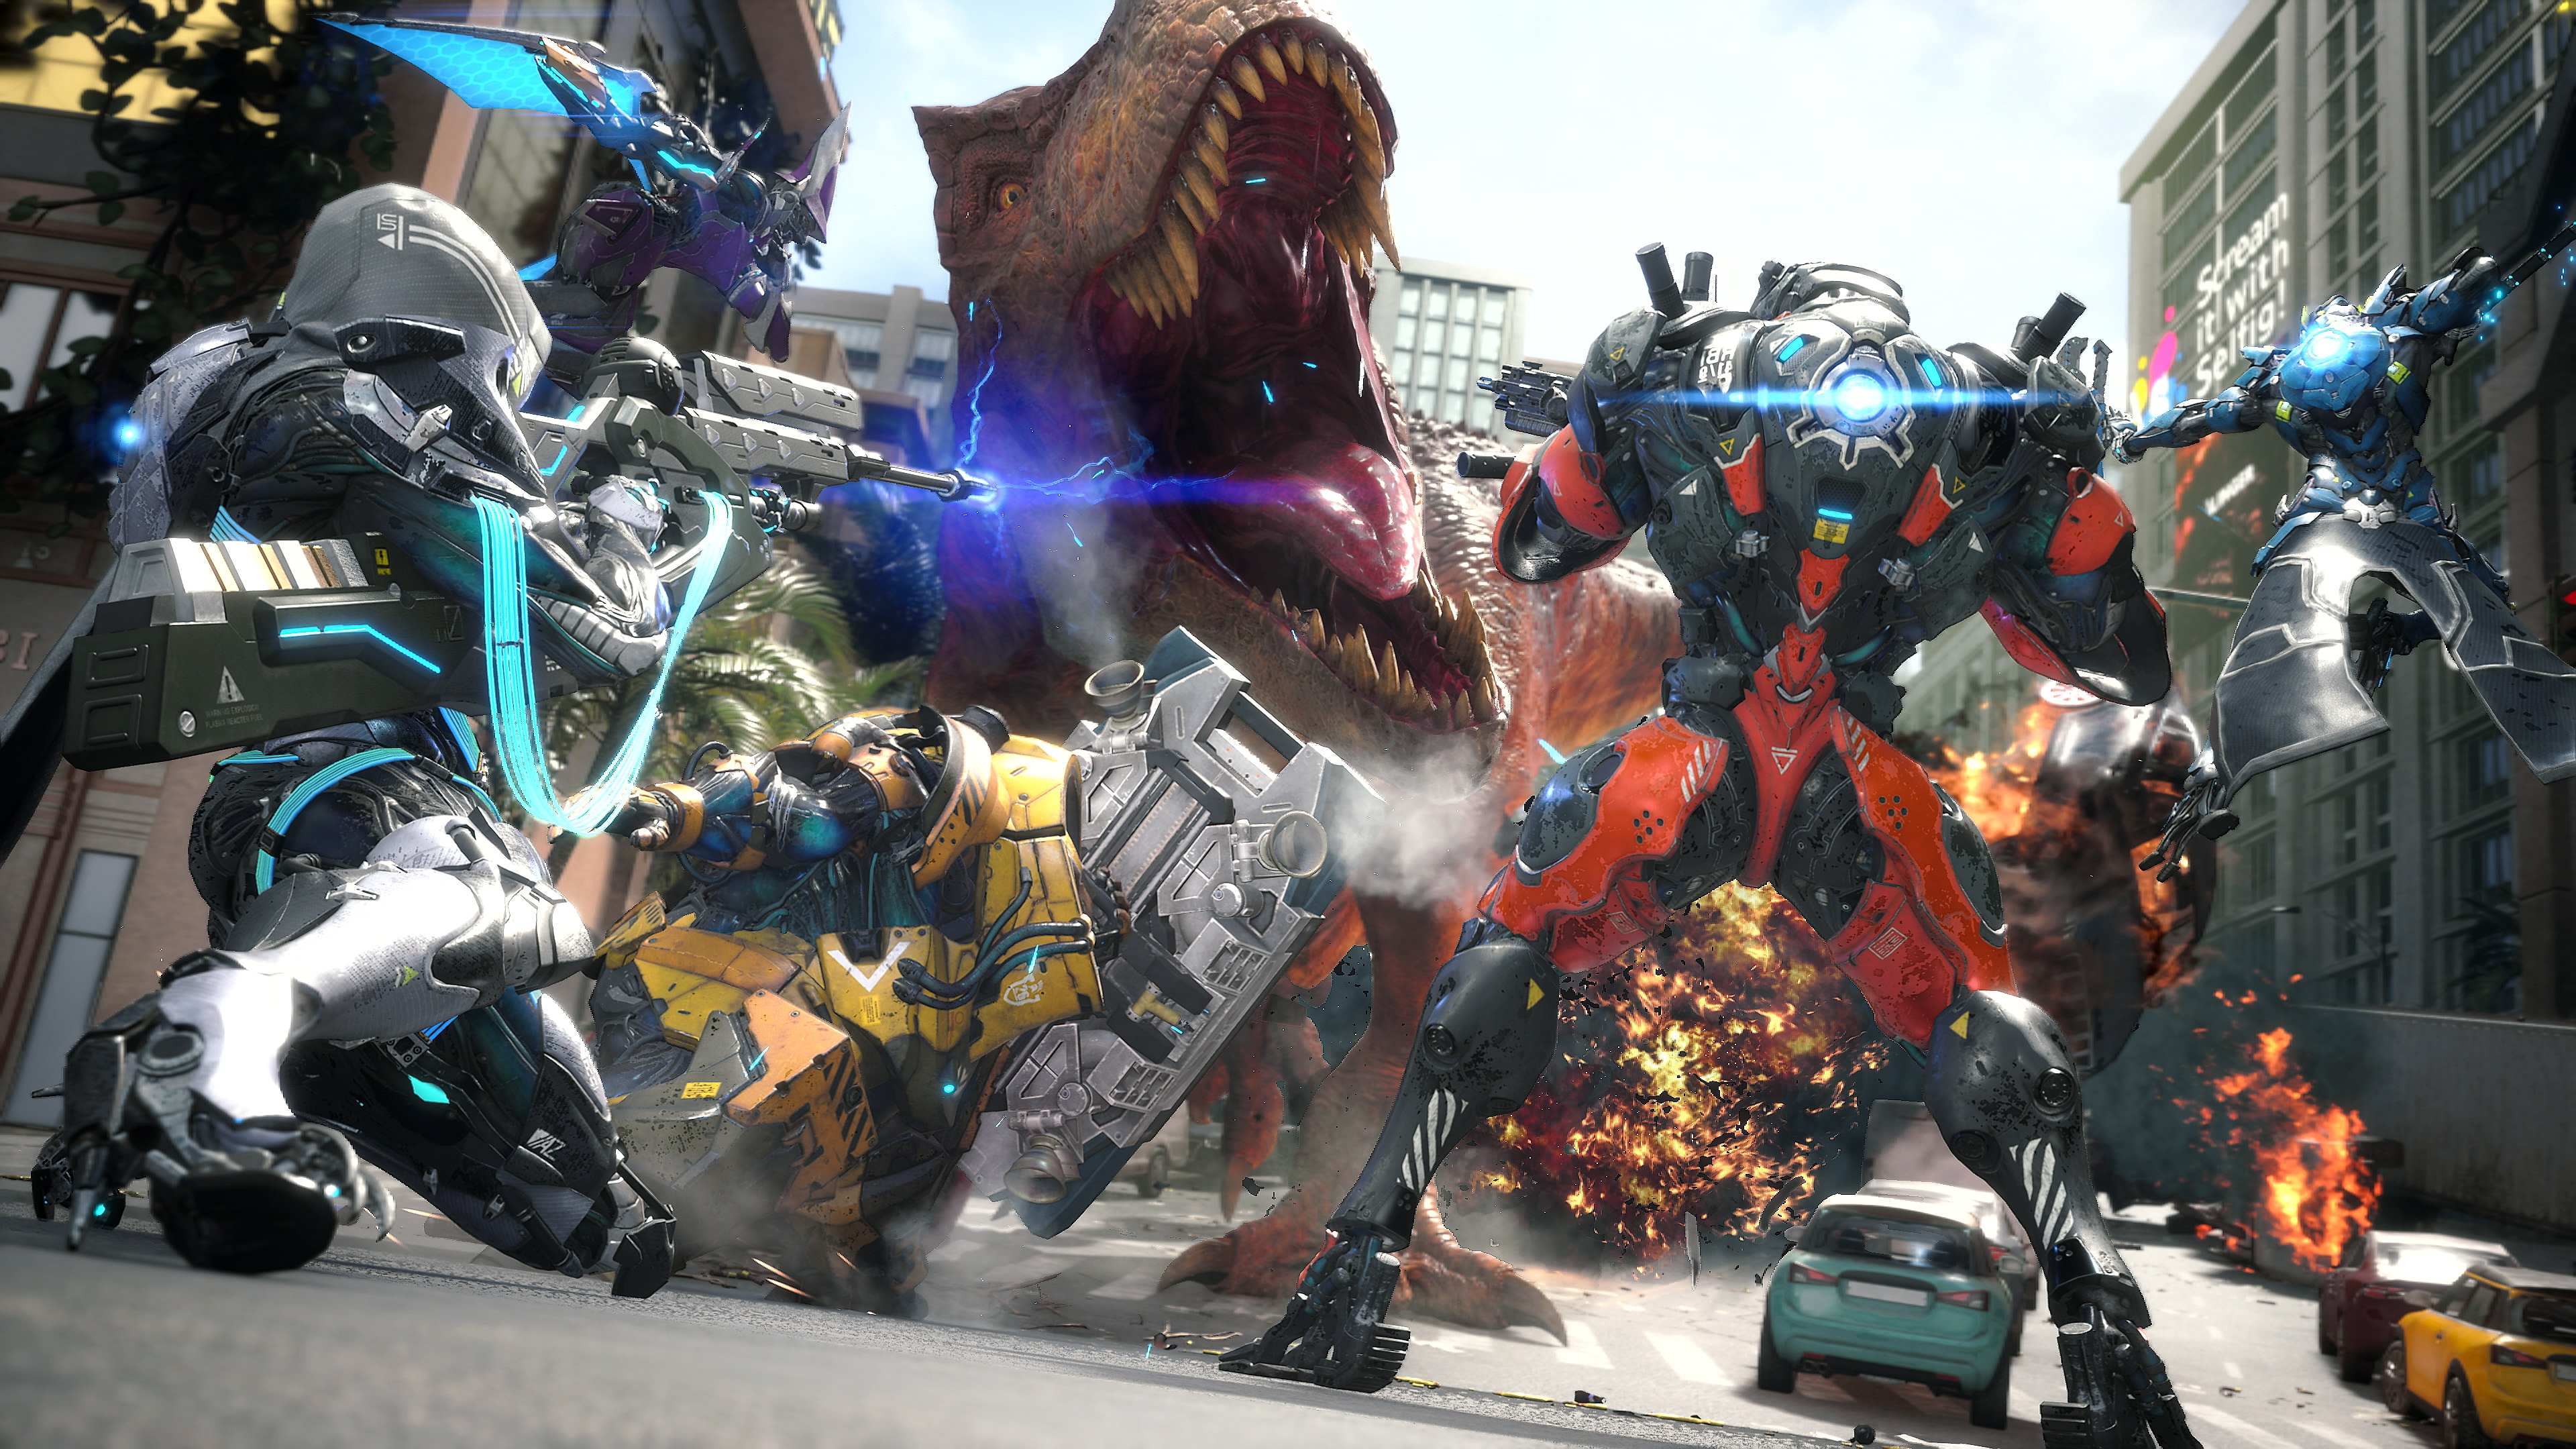 Exoprimal - captura de tela mostrando equipe de personagens em exosuits enfrentando um dinossauro similar a um tiranossauro